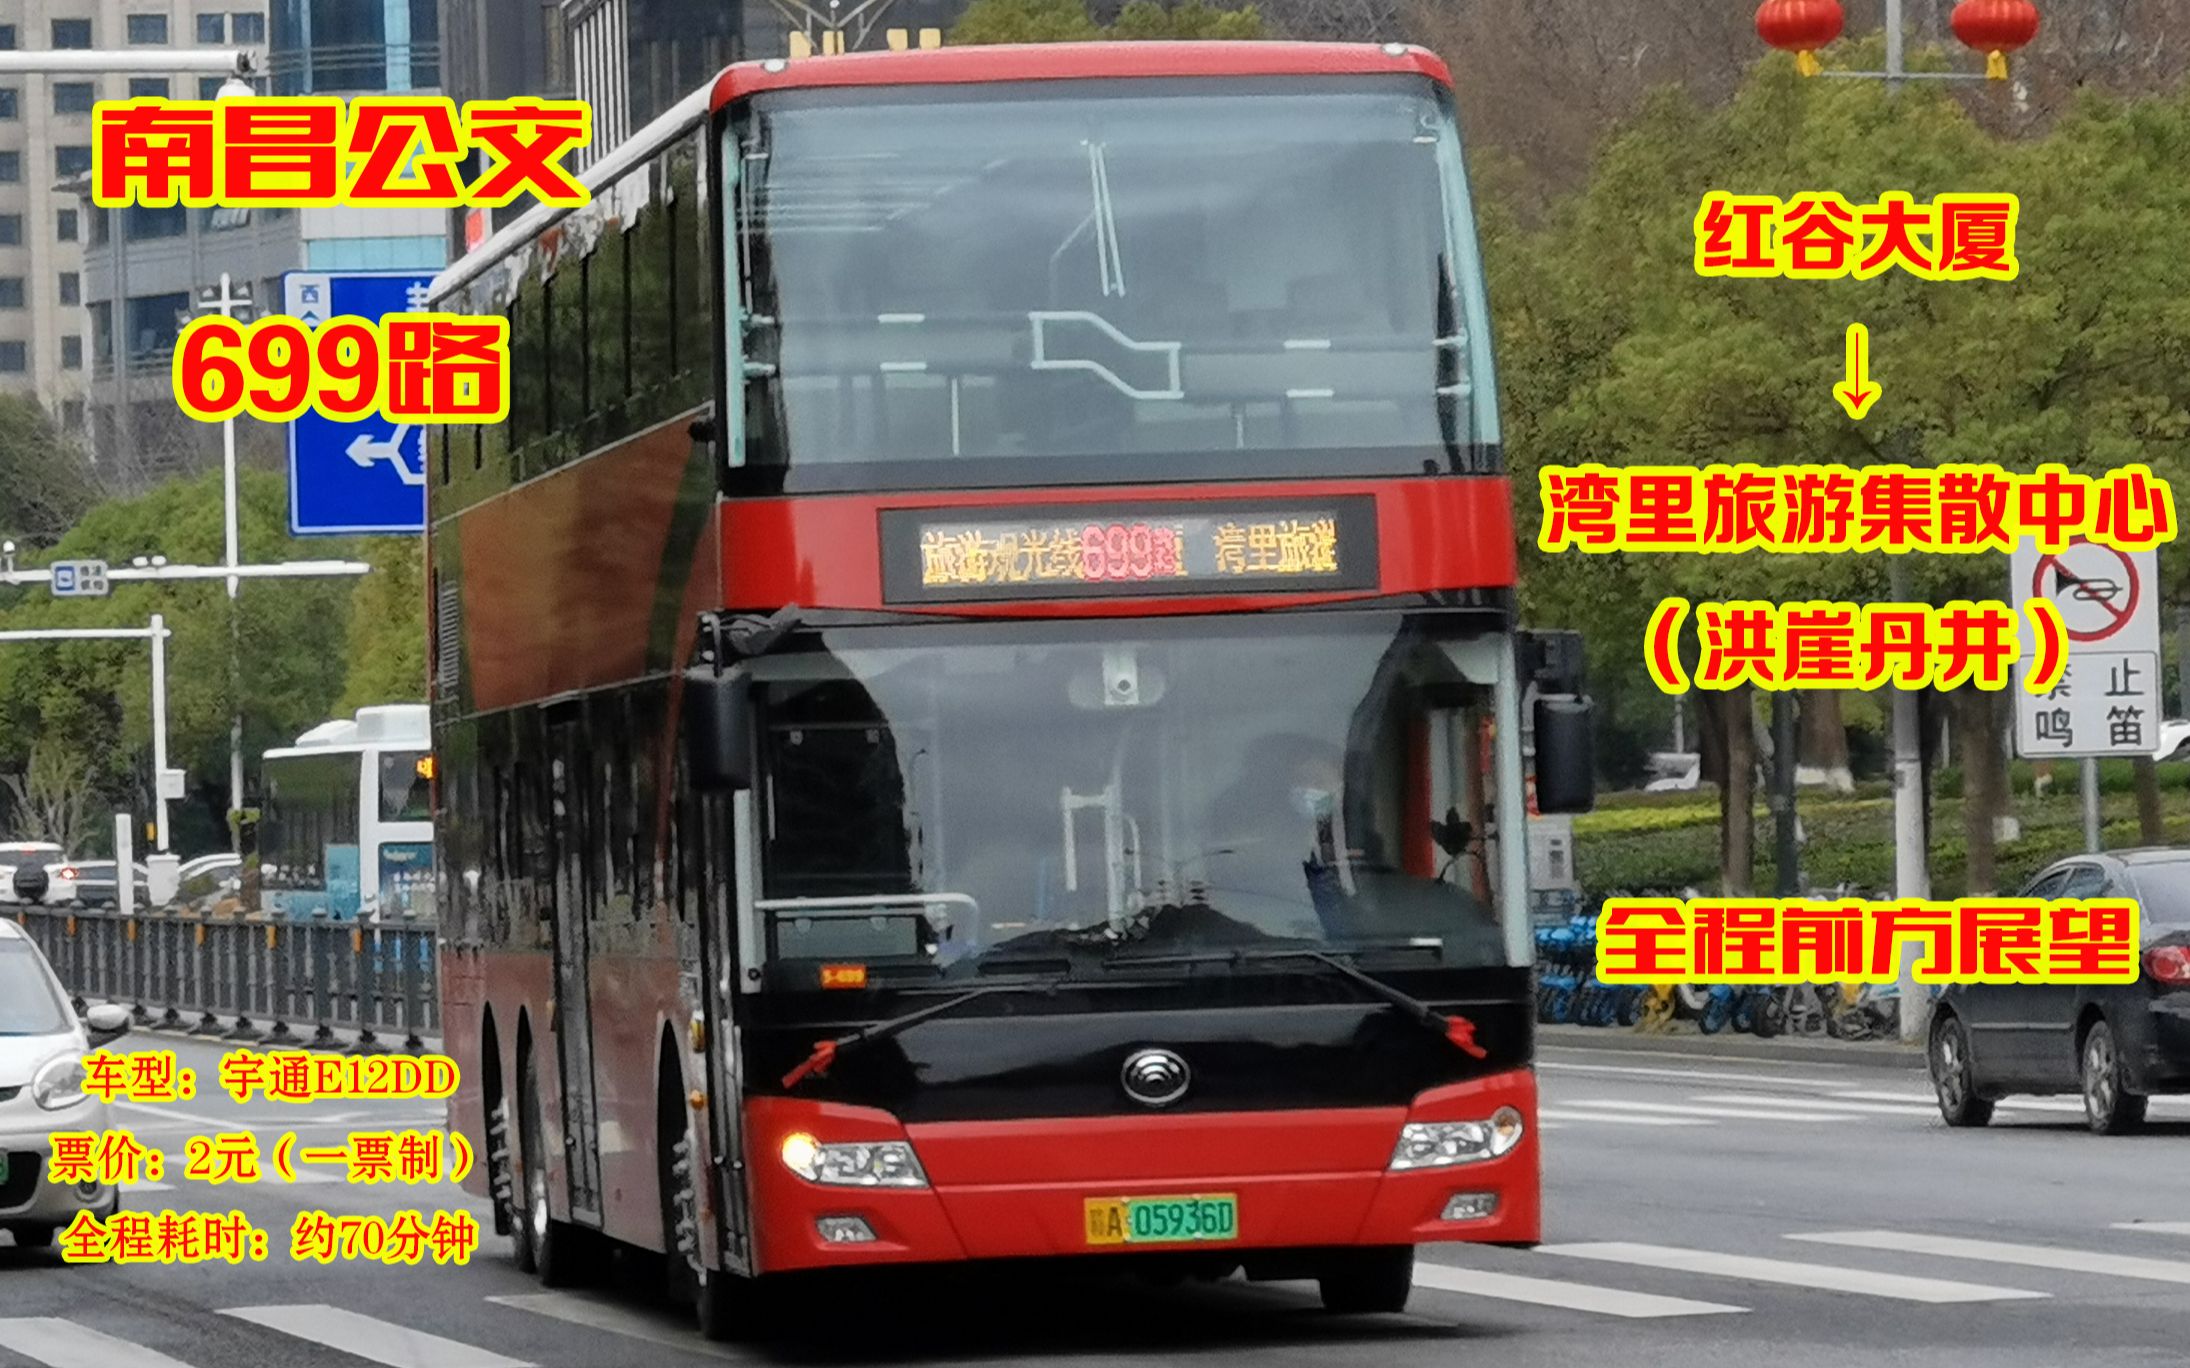 南昌699路双层巴士图片